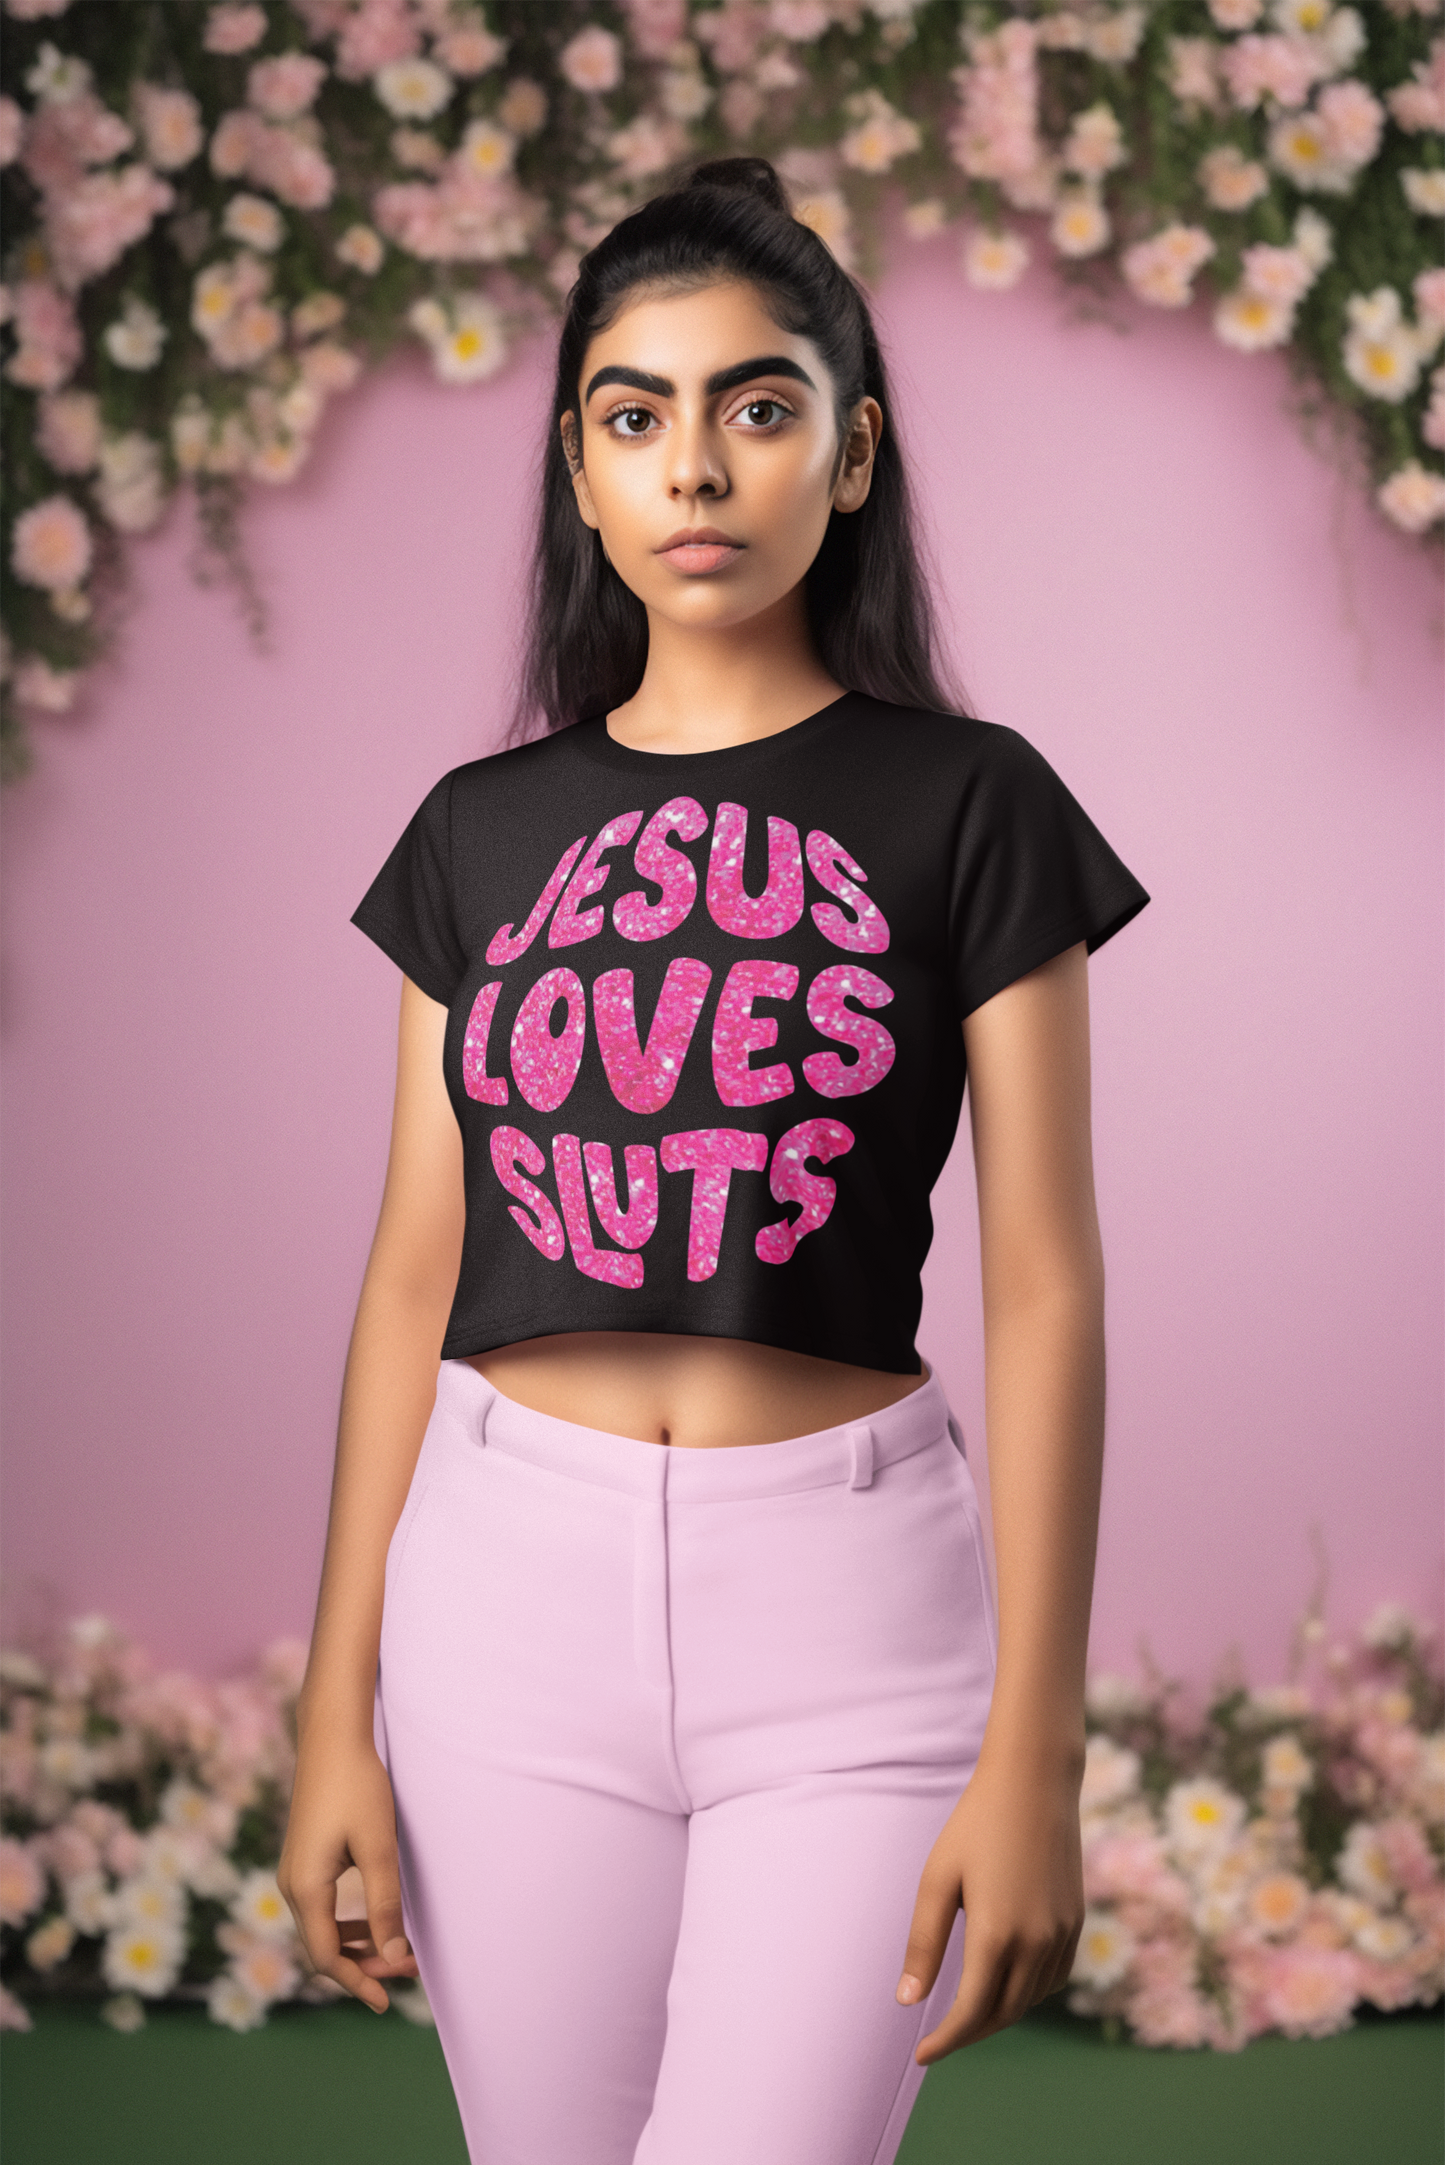 Hoody - Jesus Love Sluts